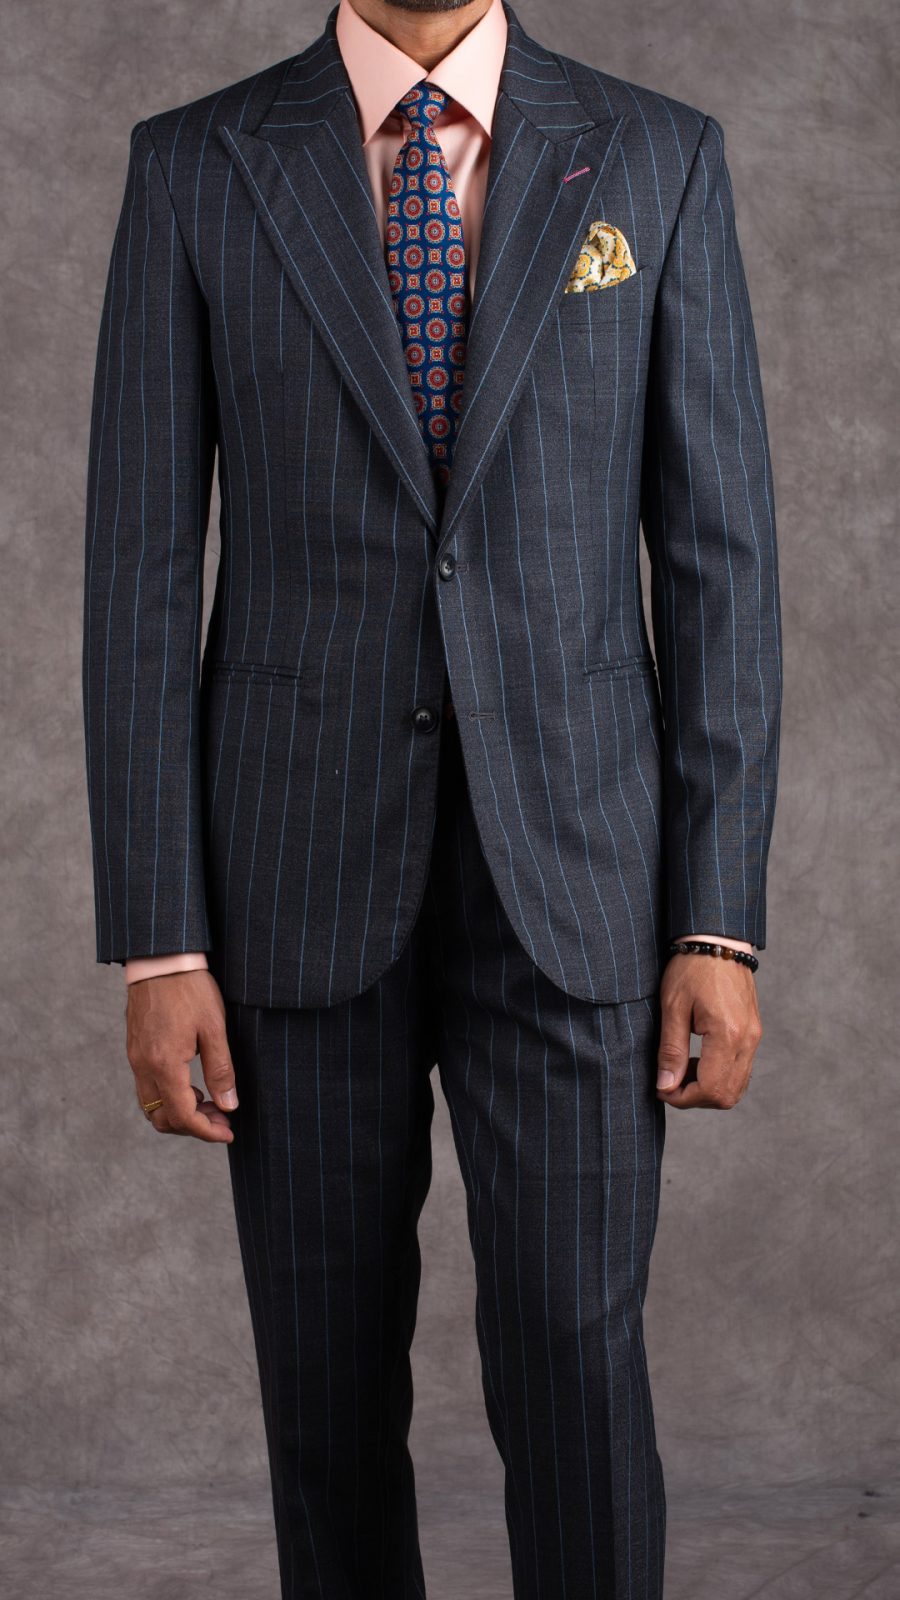 Pinstripes suit